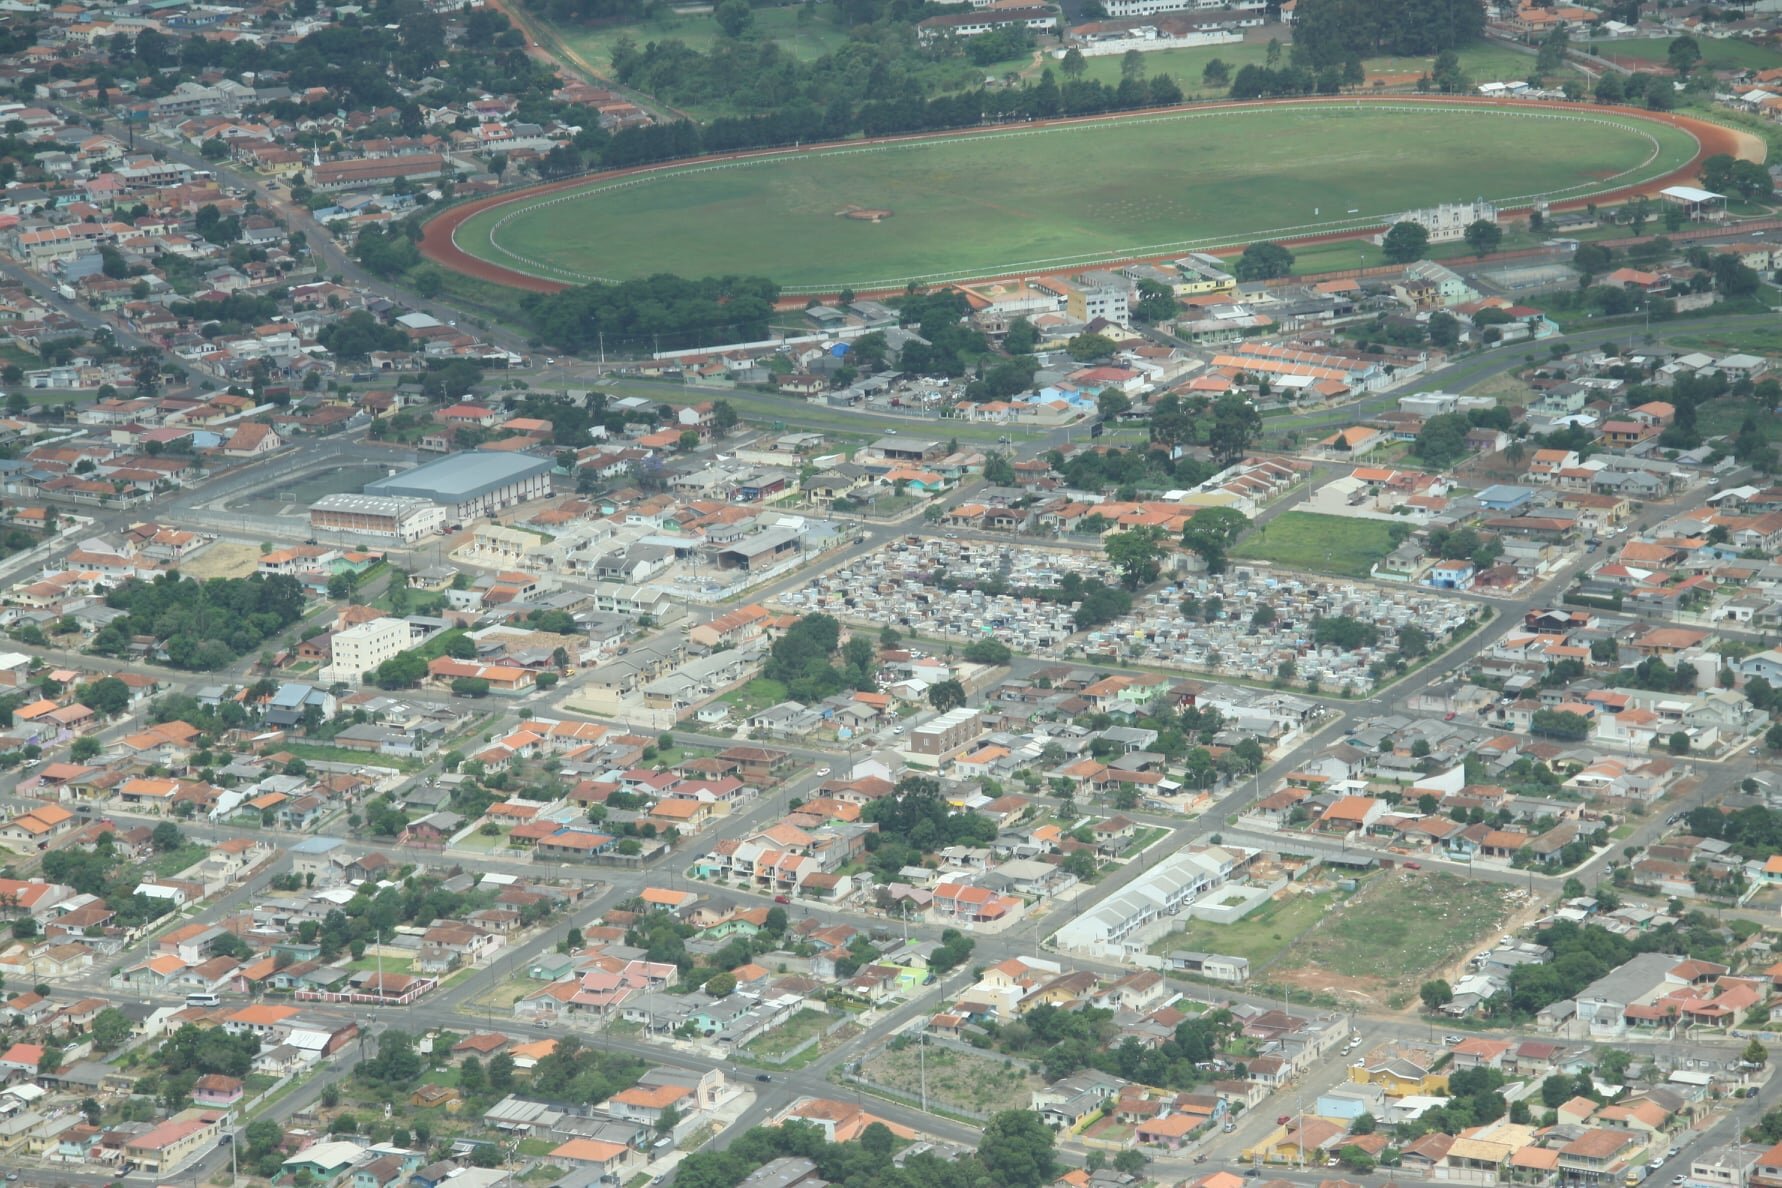 Vista aérea do Hipódromo de Uvaranas - Início dos anos 2000